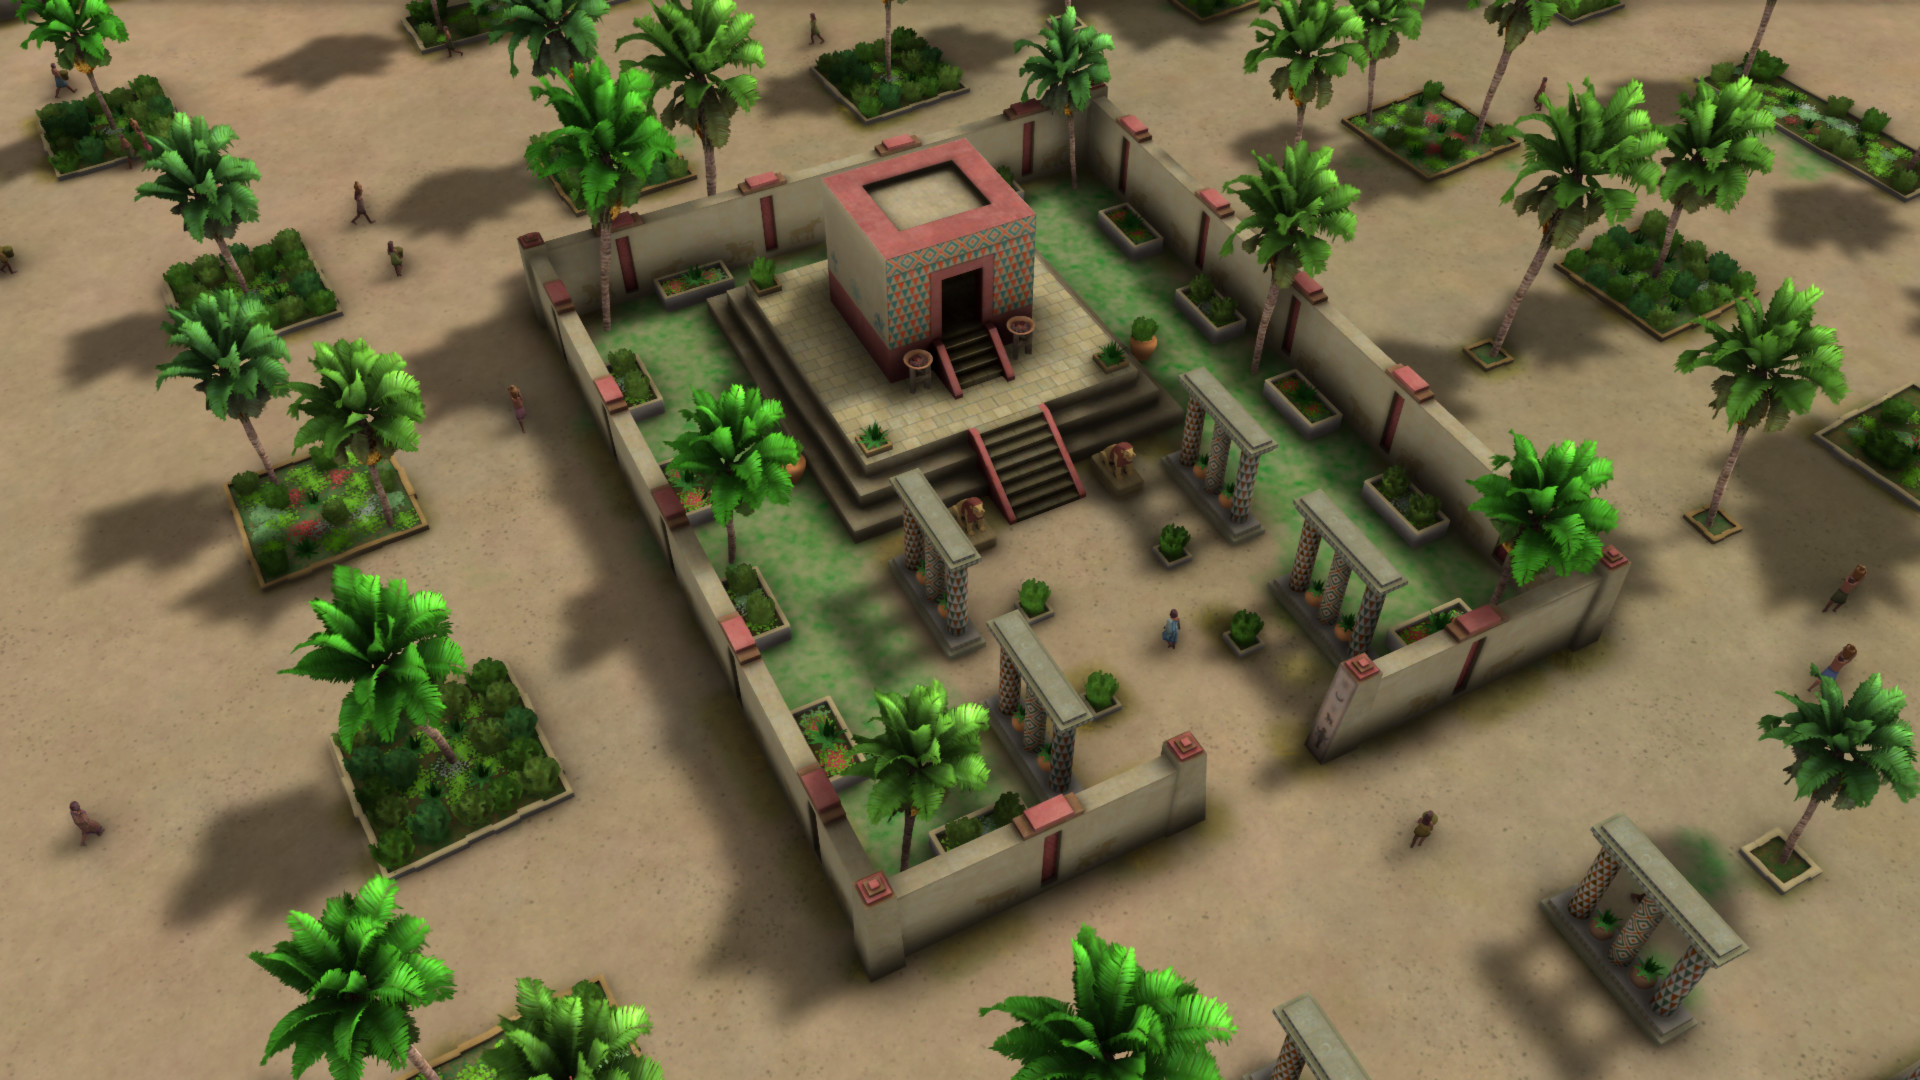 ziggurat 2 multiplayer